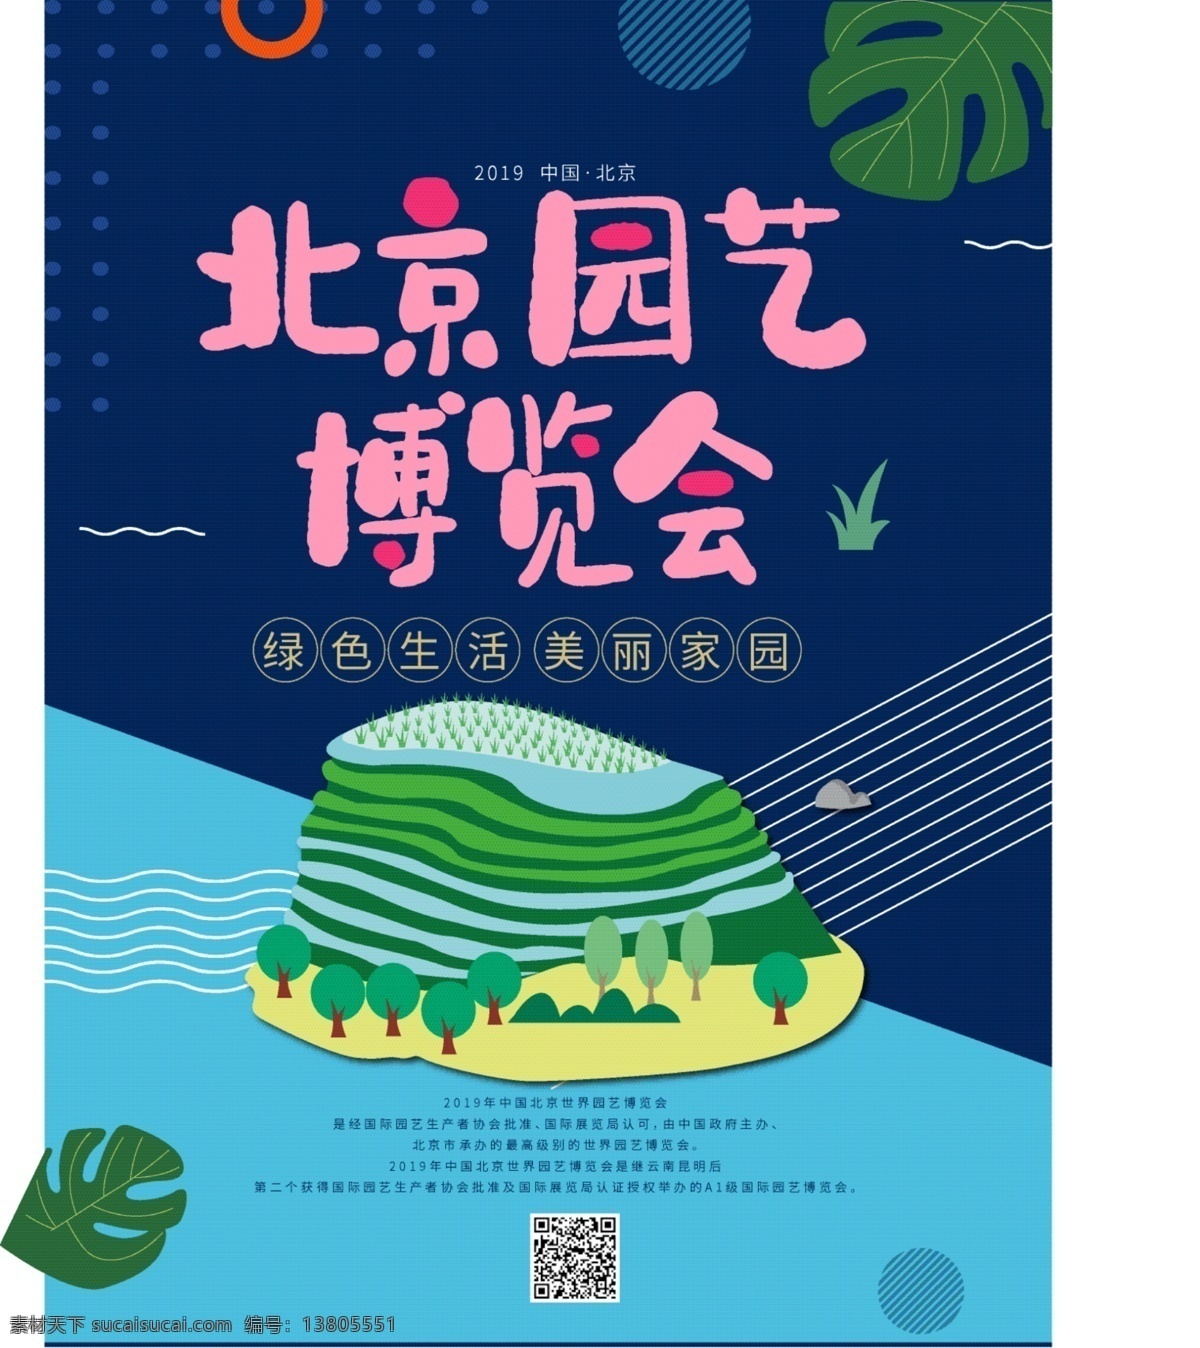 北京 园艺 博览会 工艺 海报 环保 城市 绿化 公益